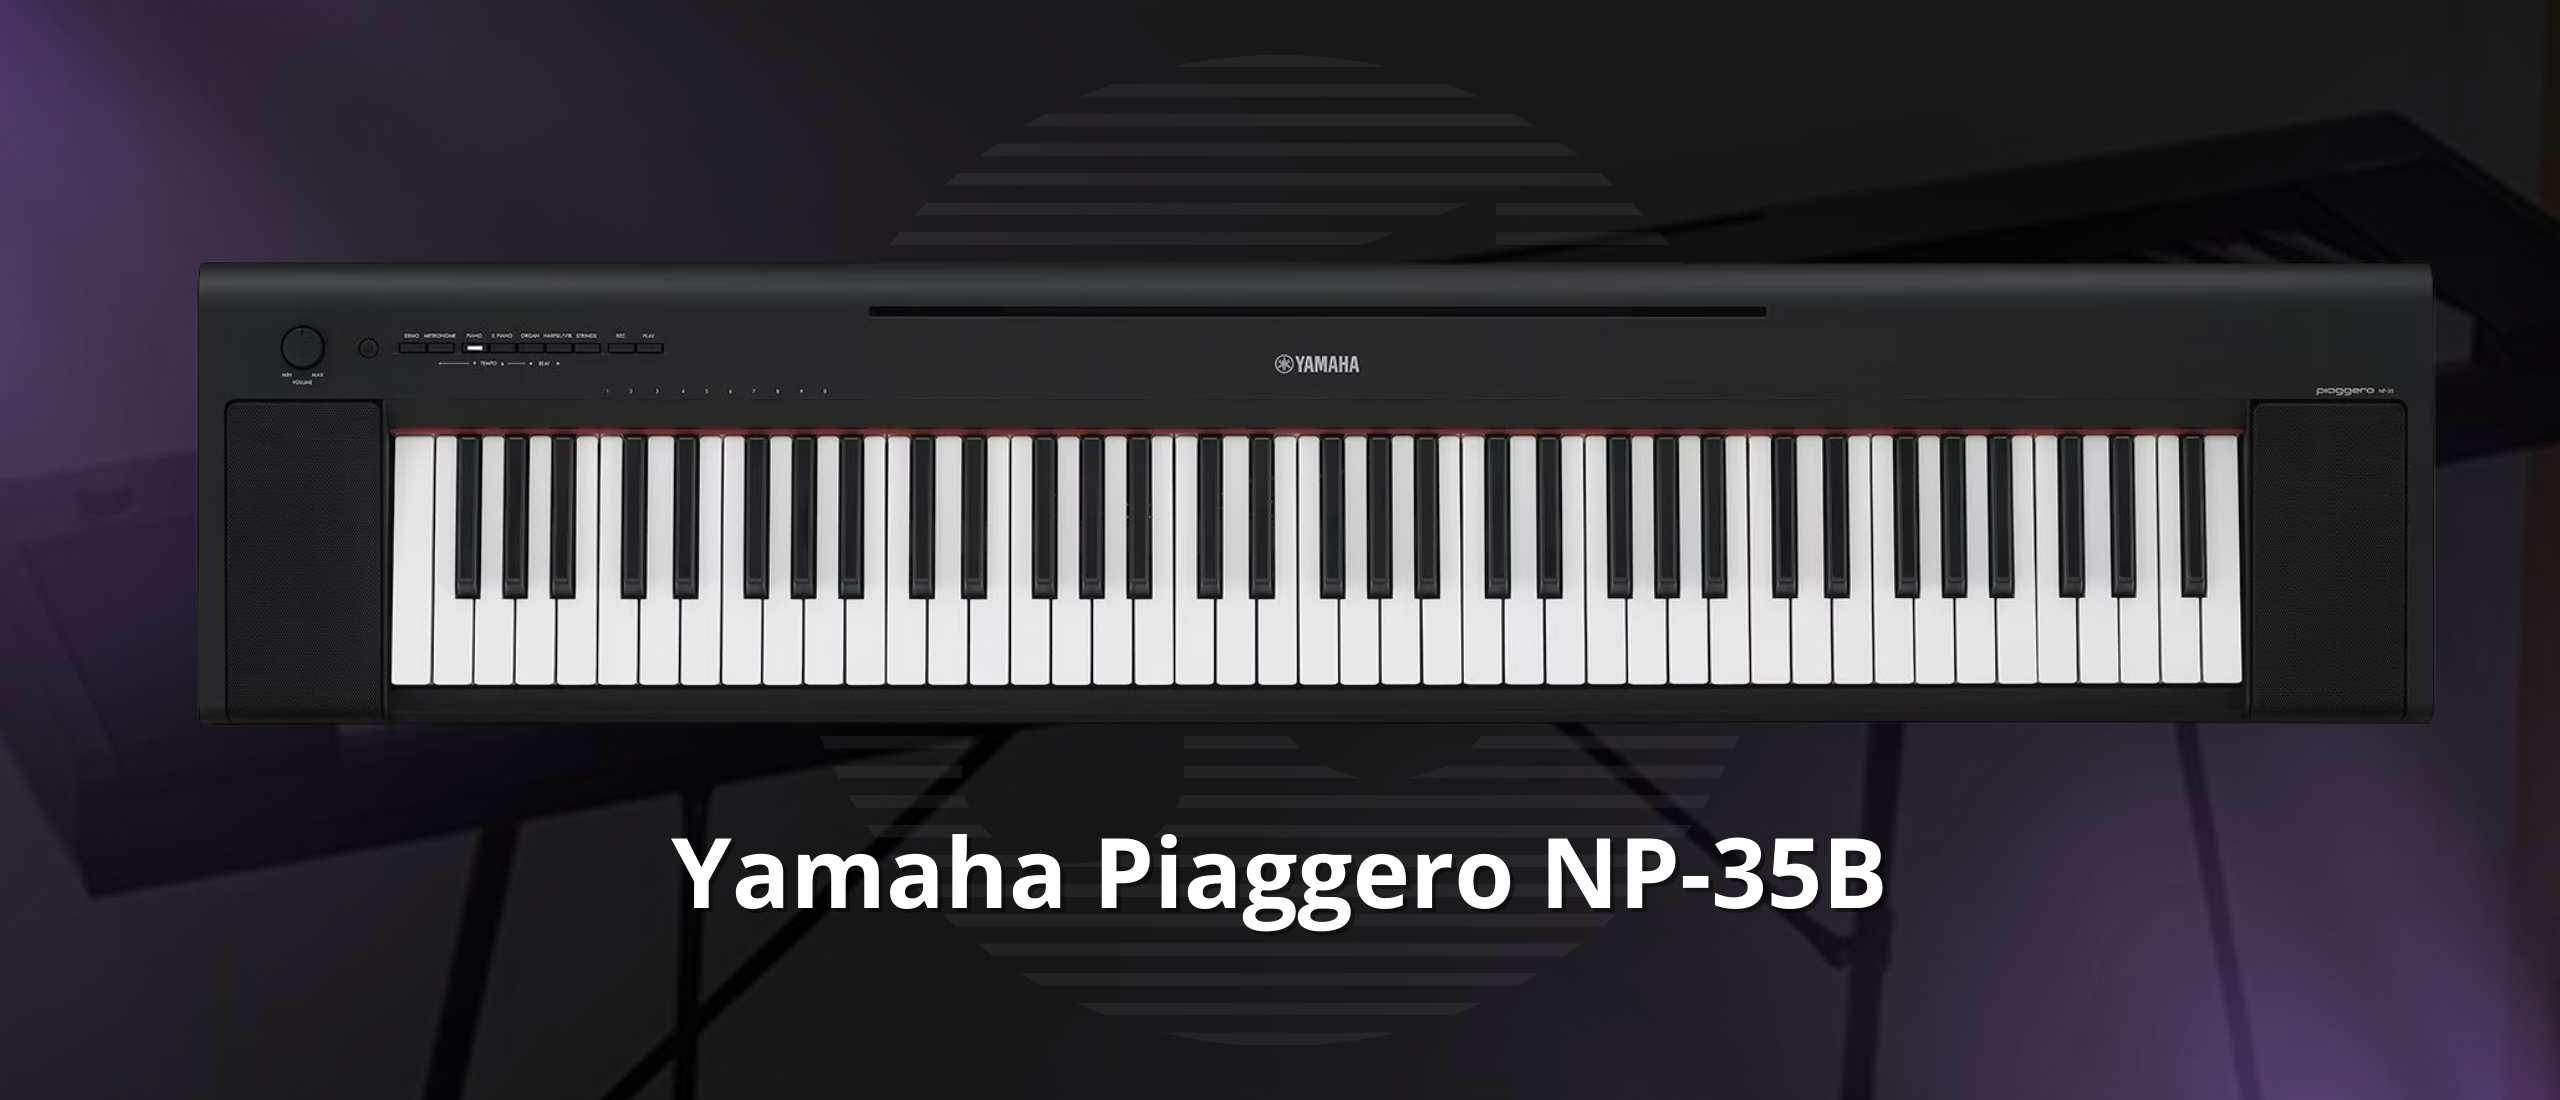 De Yamaha Piaggero NP-35B: Een Muzikaal Juweeltje